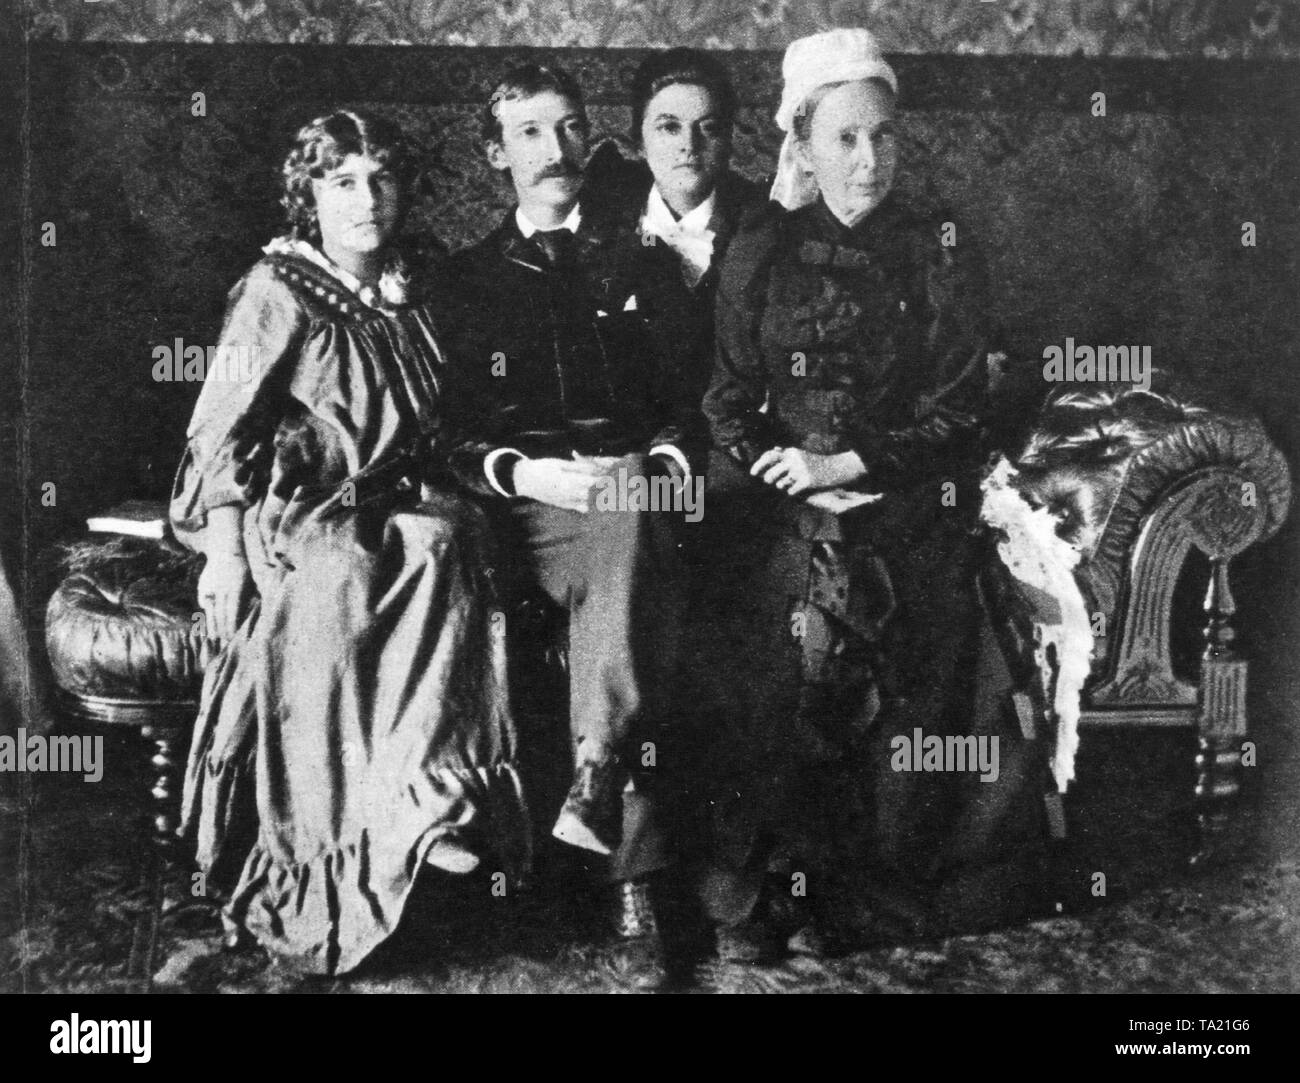 L'auteur écossais Robert Louis Stevenson lors d'une visite à Sydney, Australie avec sa belle-fille, Mme Strong, son épouse Fanny Stevenson et sa mère (de gauche). Banque D'Images